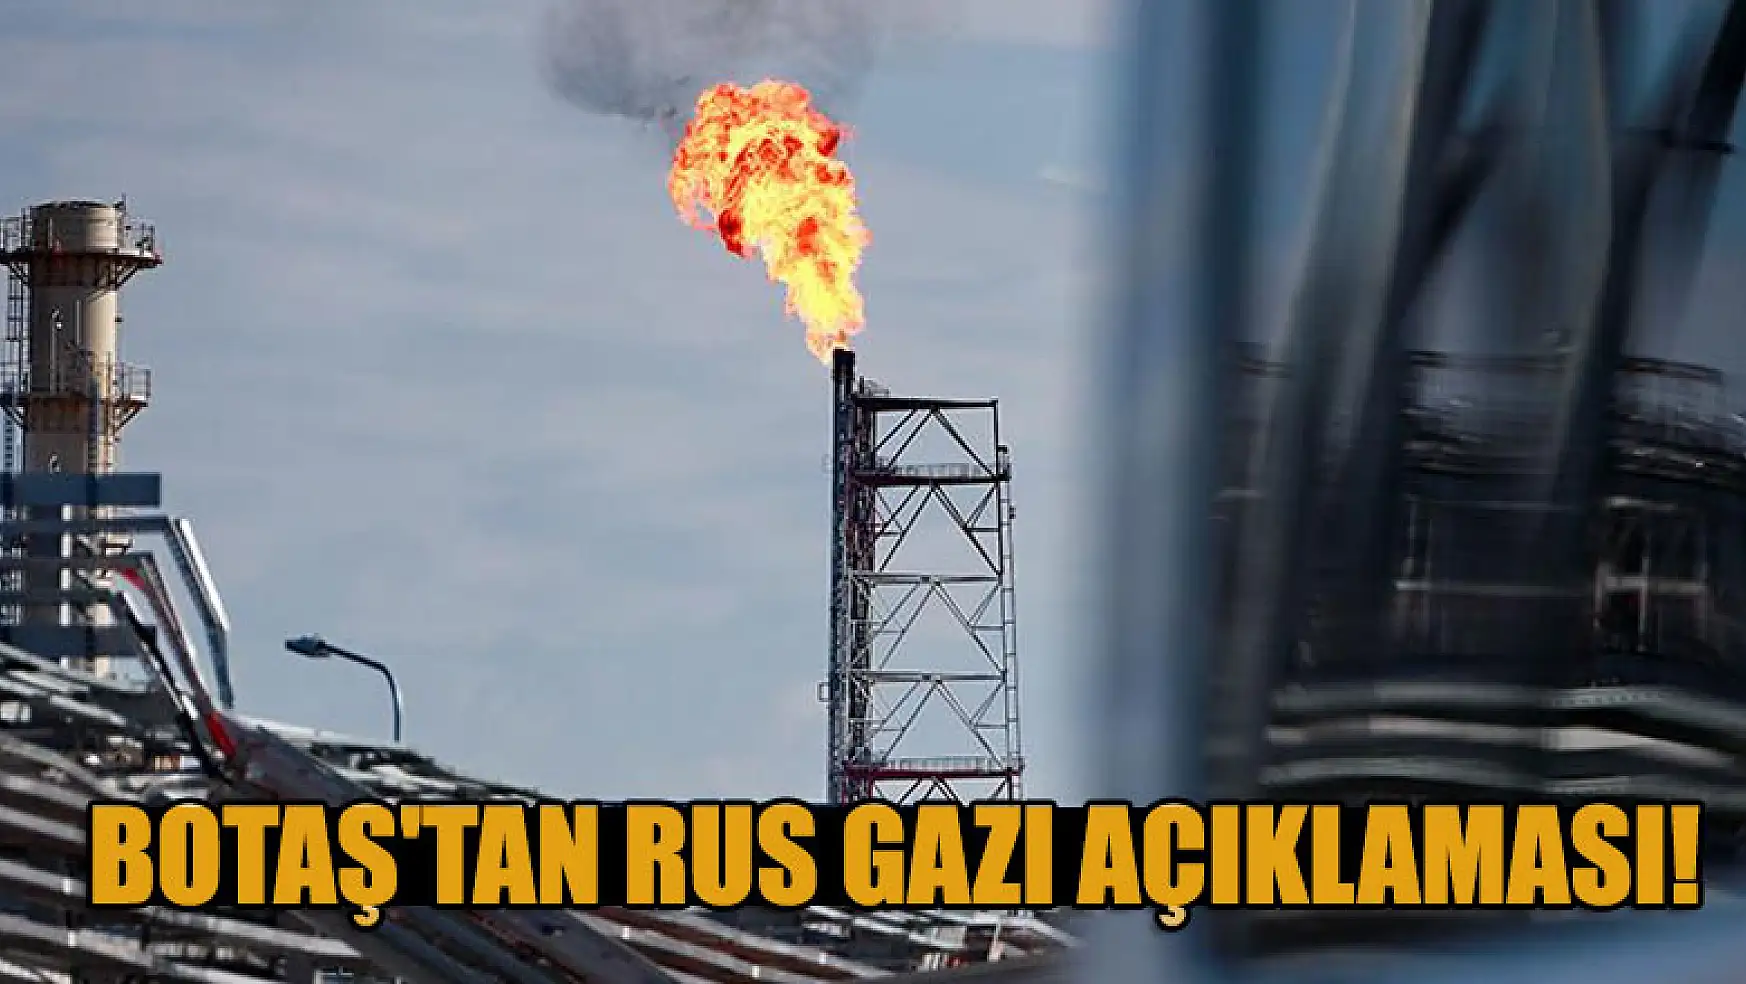 BOTAŞ'tan Rus gazı açıklaması!